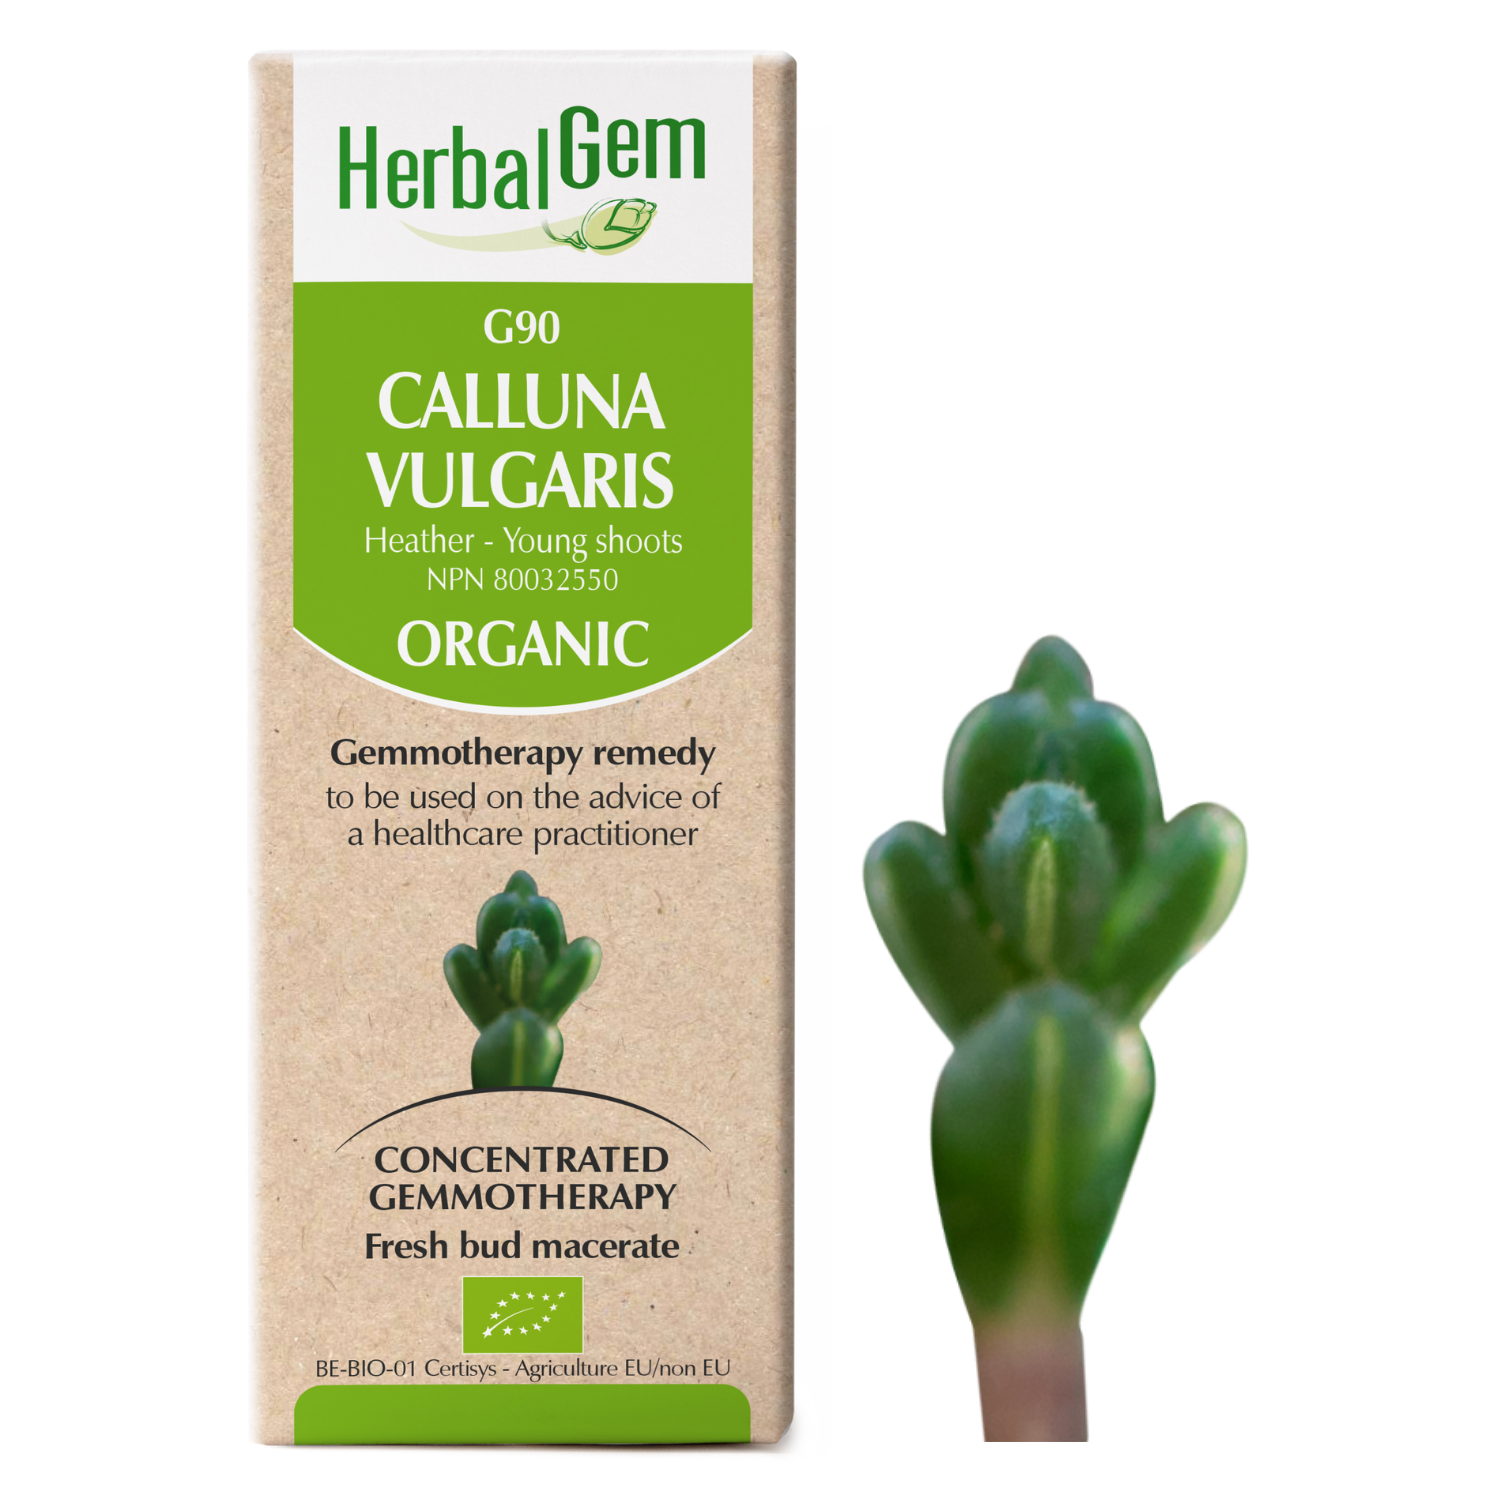 Calluna vulgaris (Heather) G90